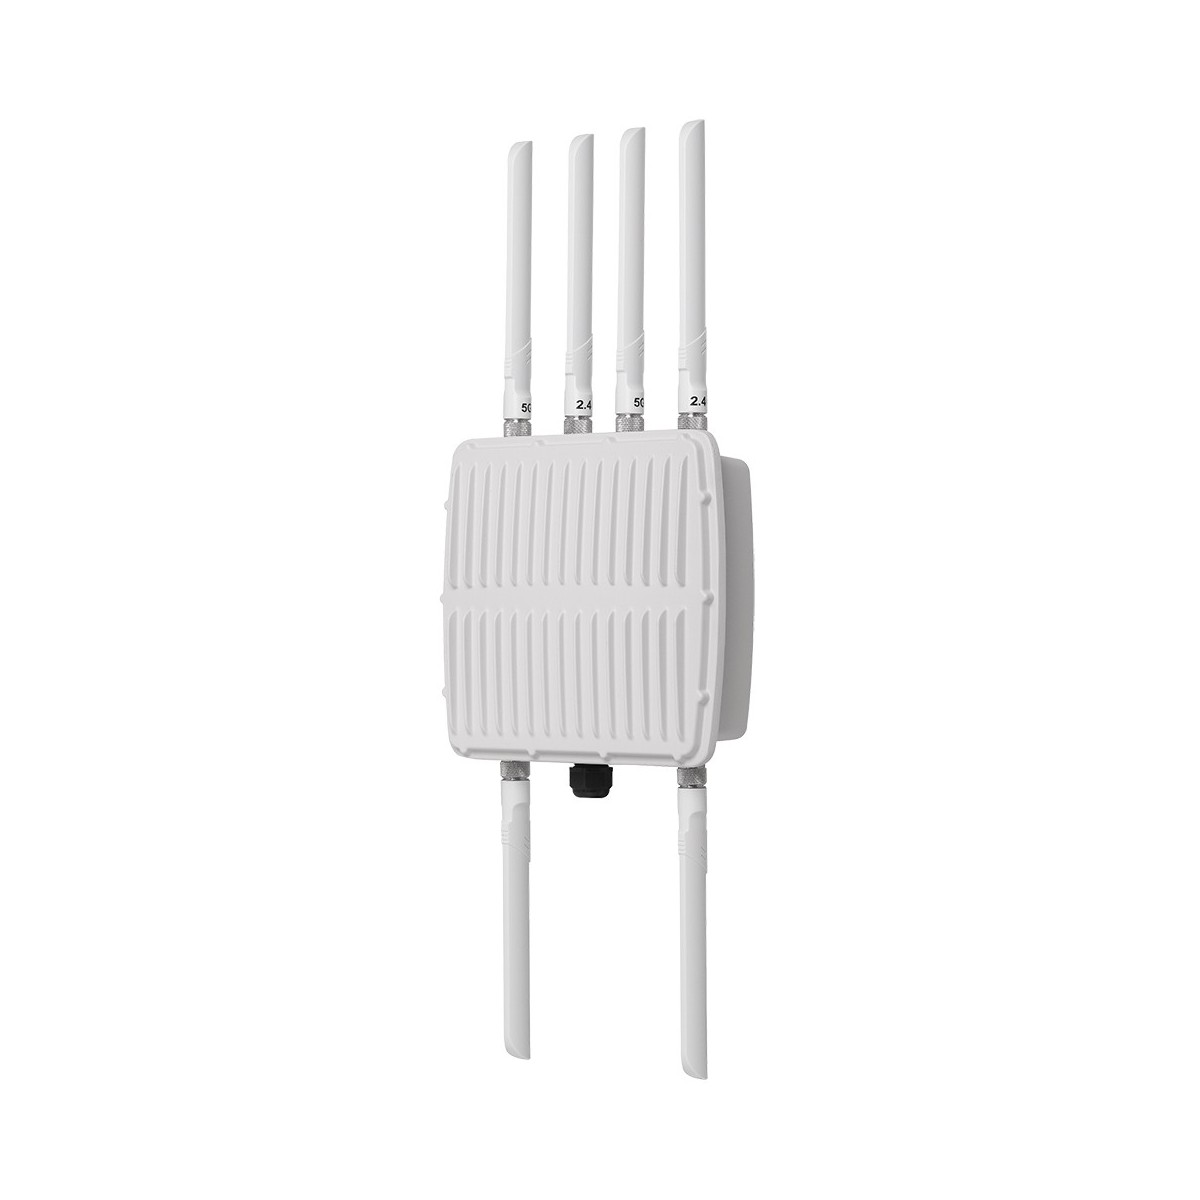 Edimax OAP1750 - 1750 Mbit/s - IEEE 802.11ac,IEEE 802.11n,IEEE 802.3at - 256 user(s) - Hidden SSID - Pole,Wall - White